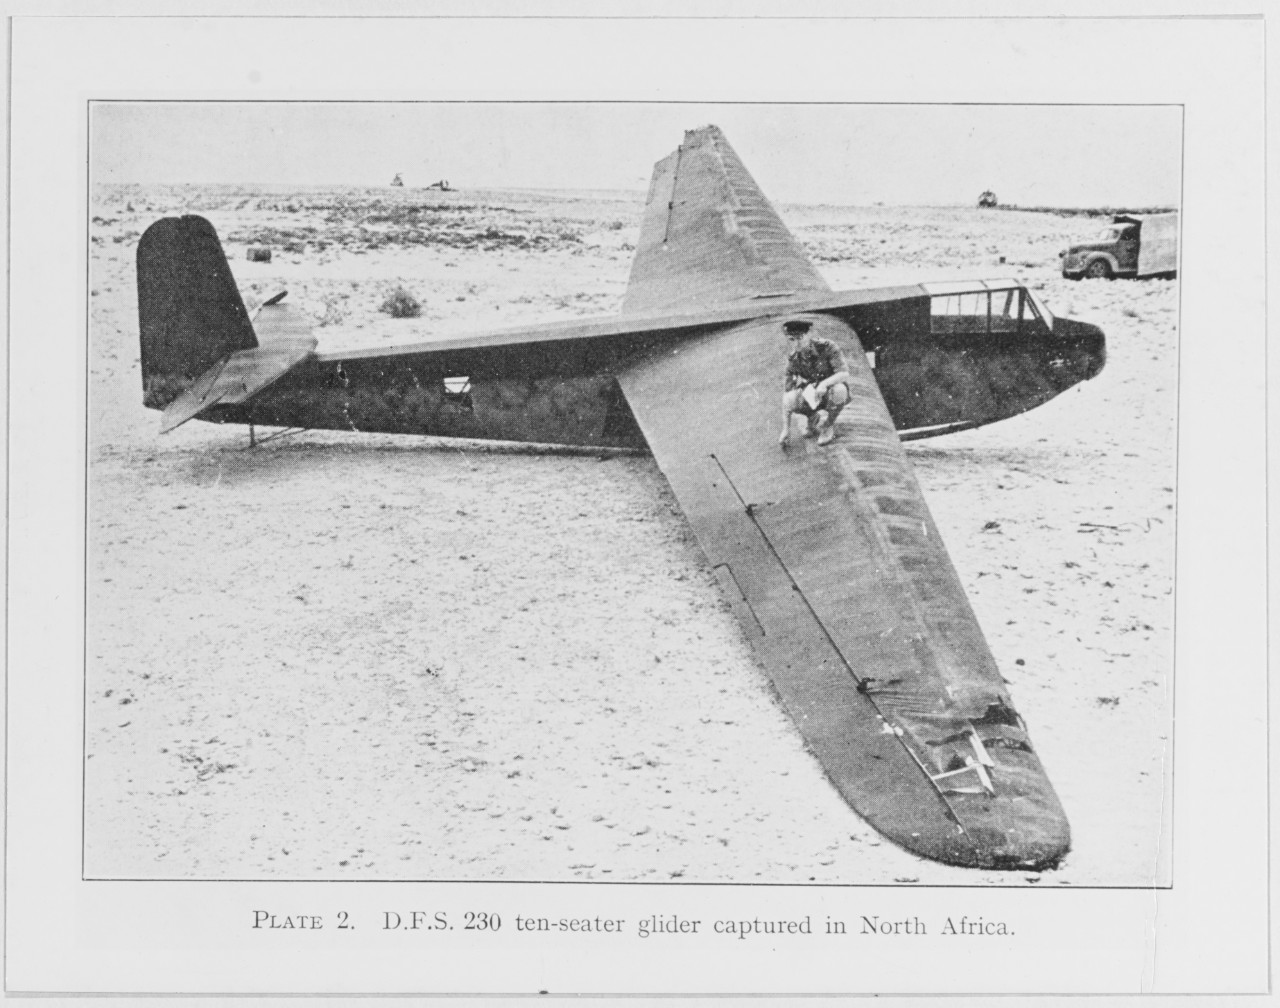 D.F.S. 230 ten-seater glider captured in North Africa